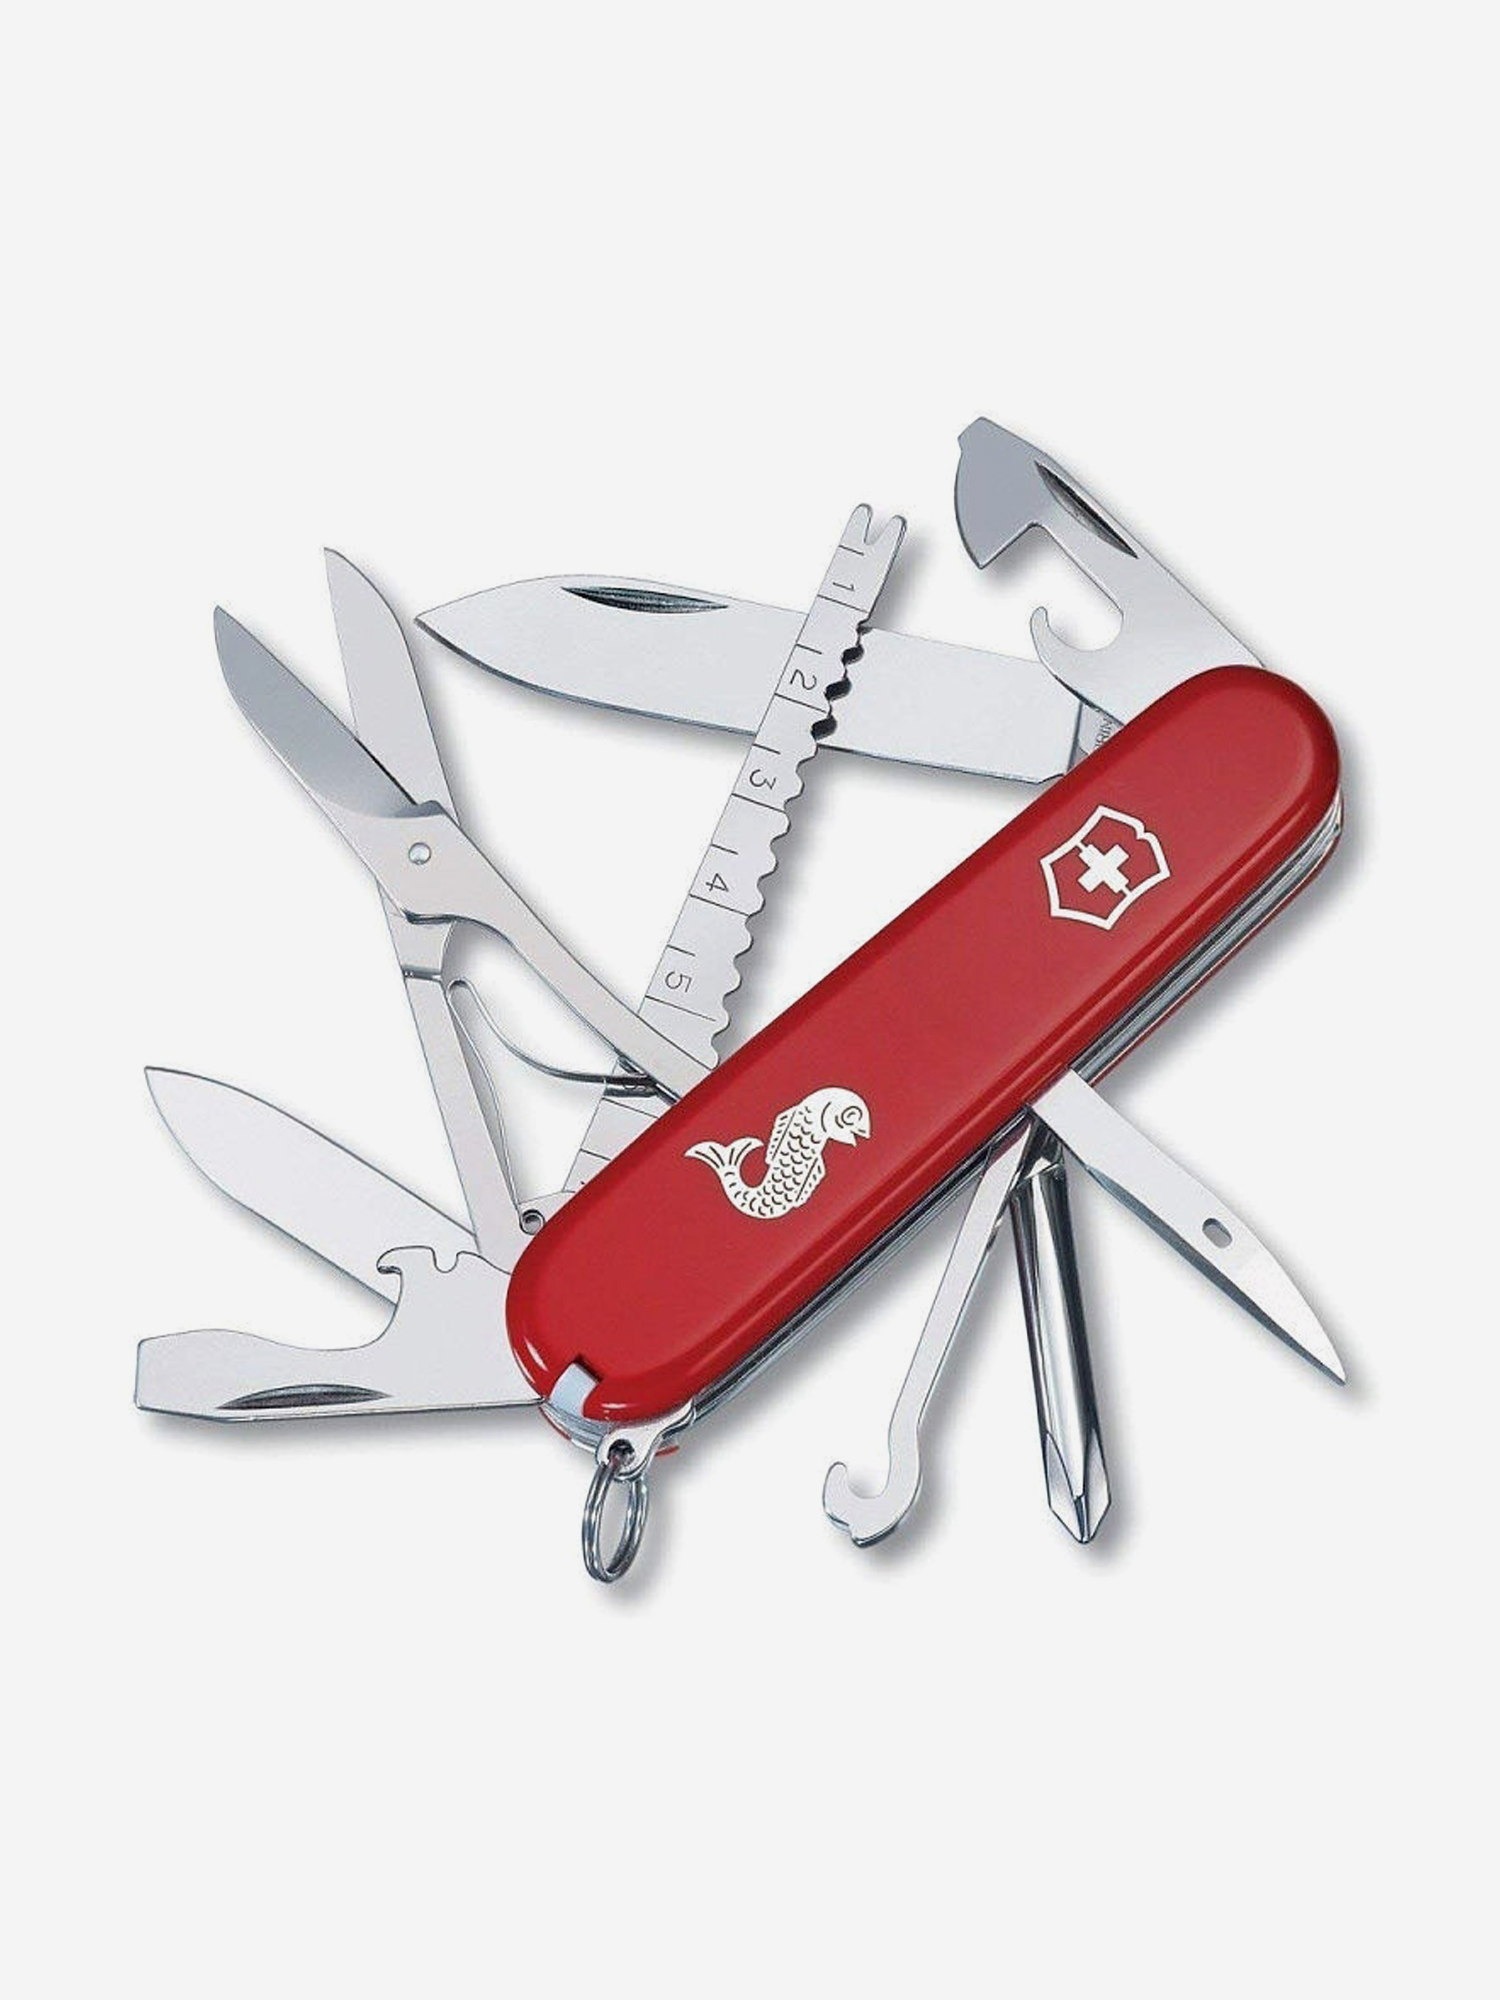 Нож складной Victorinox Fisherman, 91 мм, 18 функций, Красный нож складной victorinox workchamp 111 мм 21 функция красный